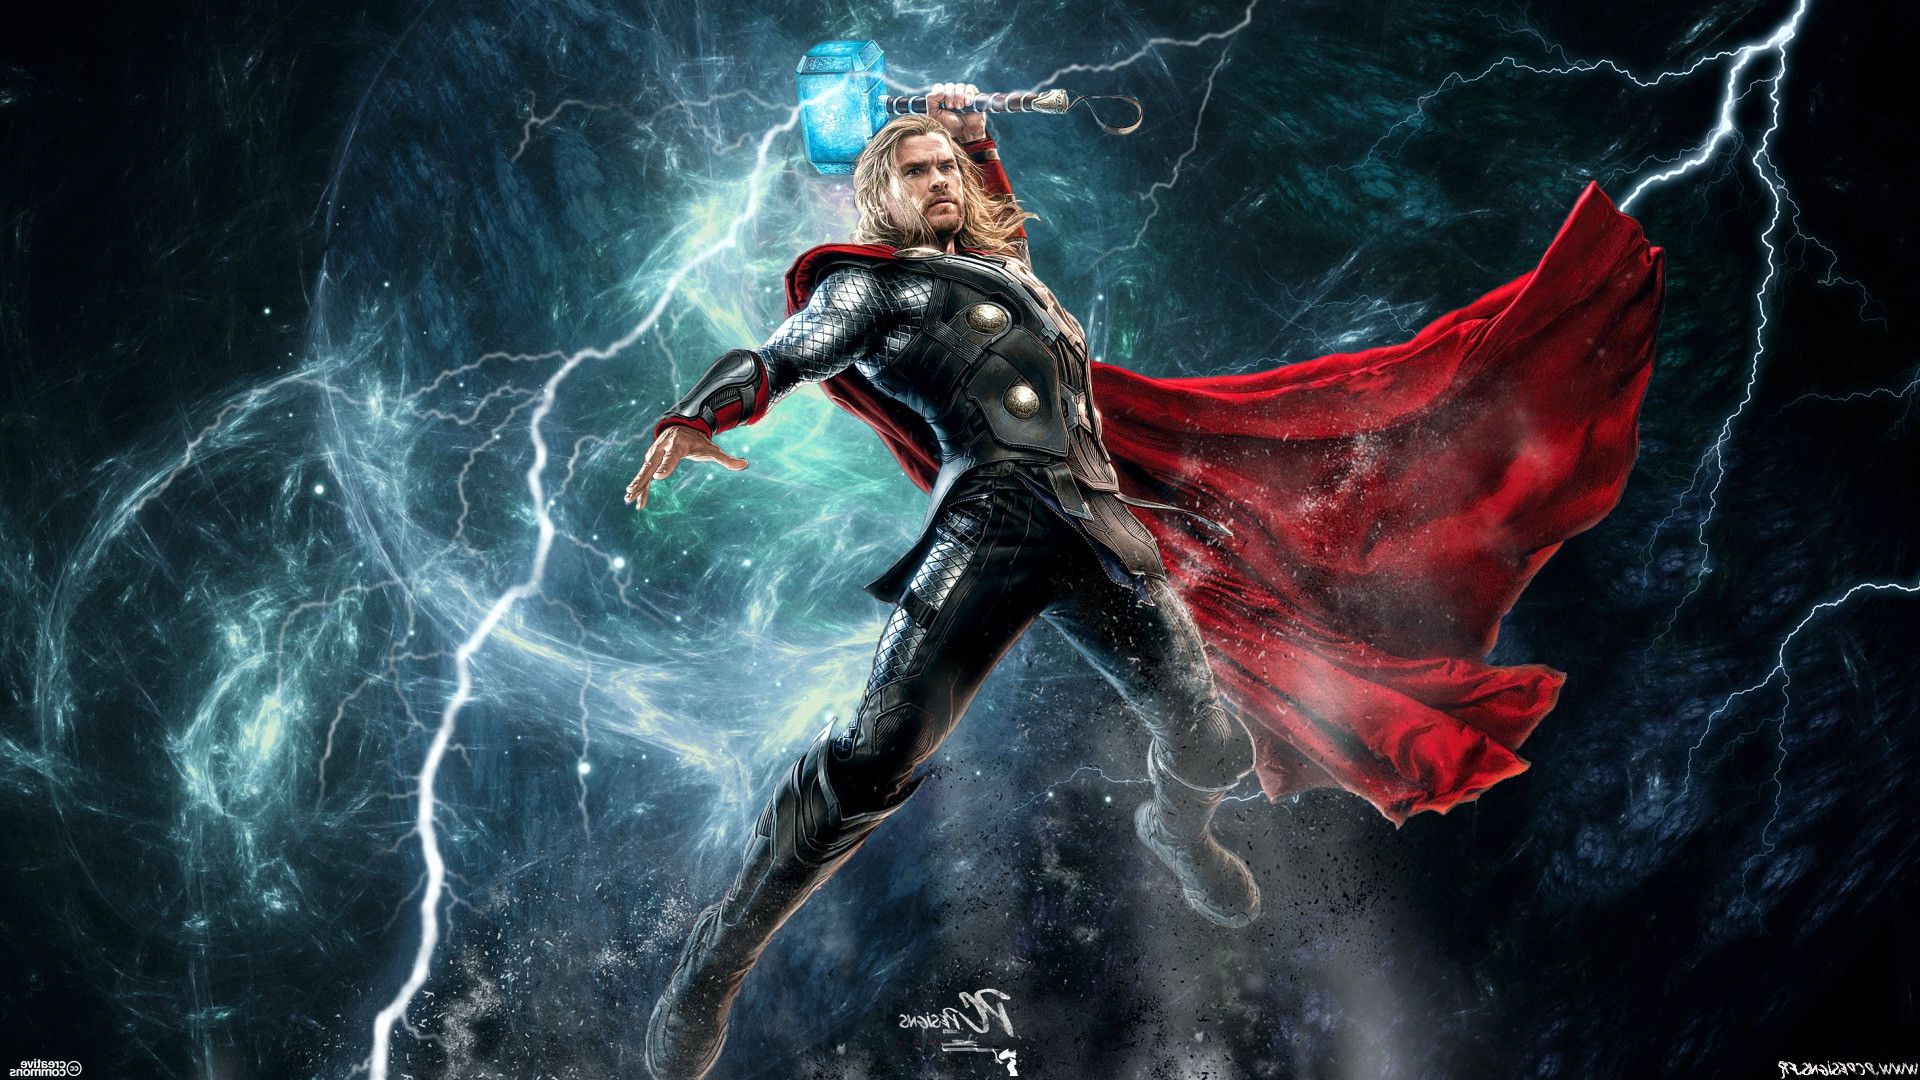 Mjolnir là chiếc búa ma thuật huyền thoại của Thor - một trong những siêu anh hùng mạnh nhất. Chỉ cần một cái nhìn vào hình ảnh liên quan, bạn sẽ được chiêm ngưỡng chiếc búa với thiết kế cực kỳ đẹp mắt và đầy sức mạnh. Hãy chiêm ngưỡng Mjolnir ngay bây giờ!